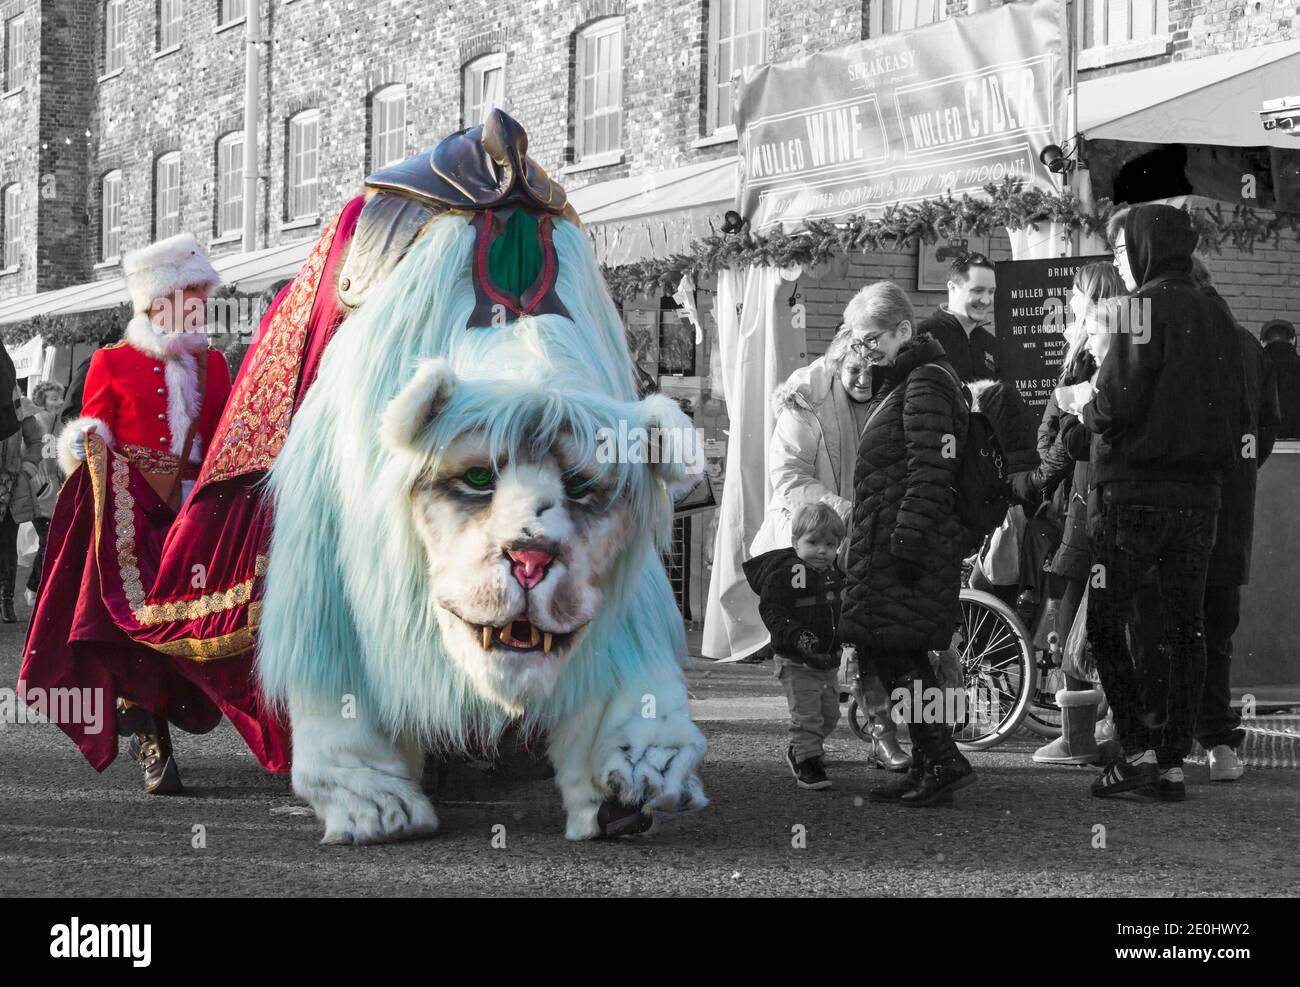 Claude le lion de marionnettes géantes défilent dans les rues au Victorian Festival of Christmas à Portsmouth, Hants England UK en décembre Banque D'Images